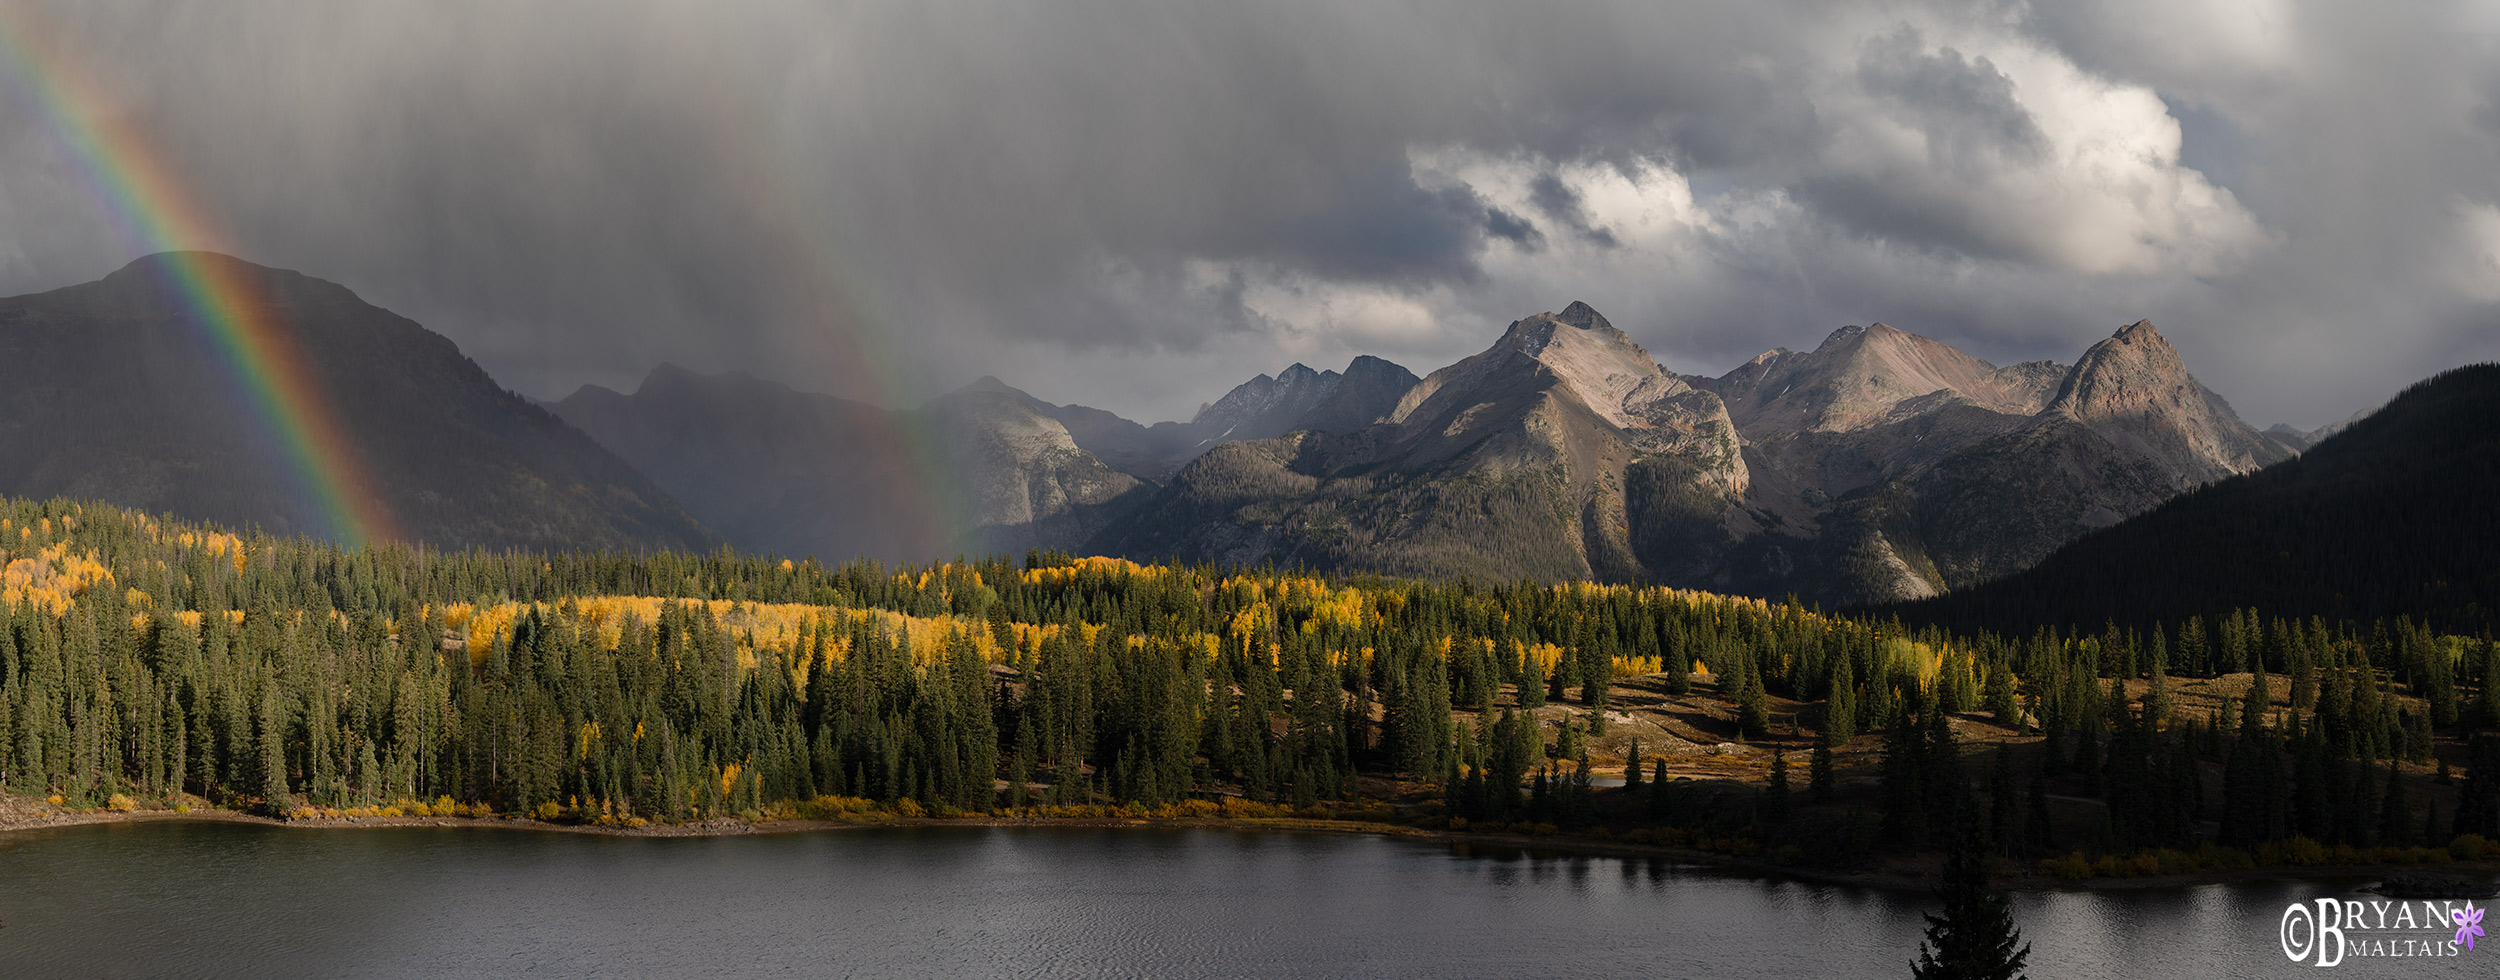 molas lake grenadier mountains rainbow panormaic print